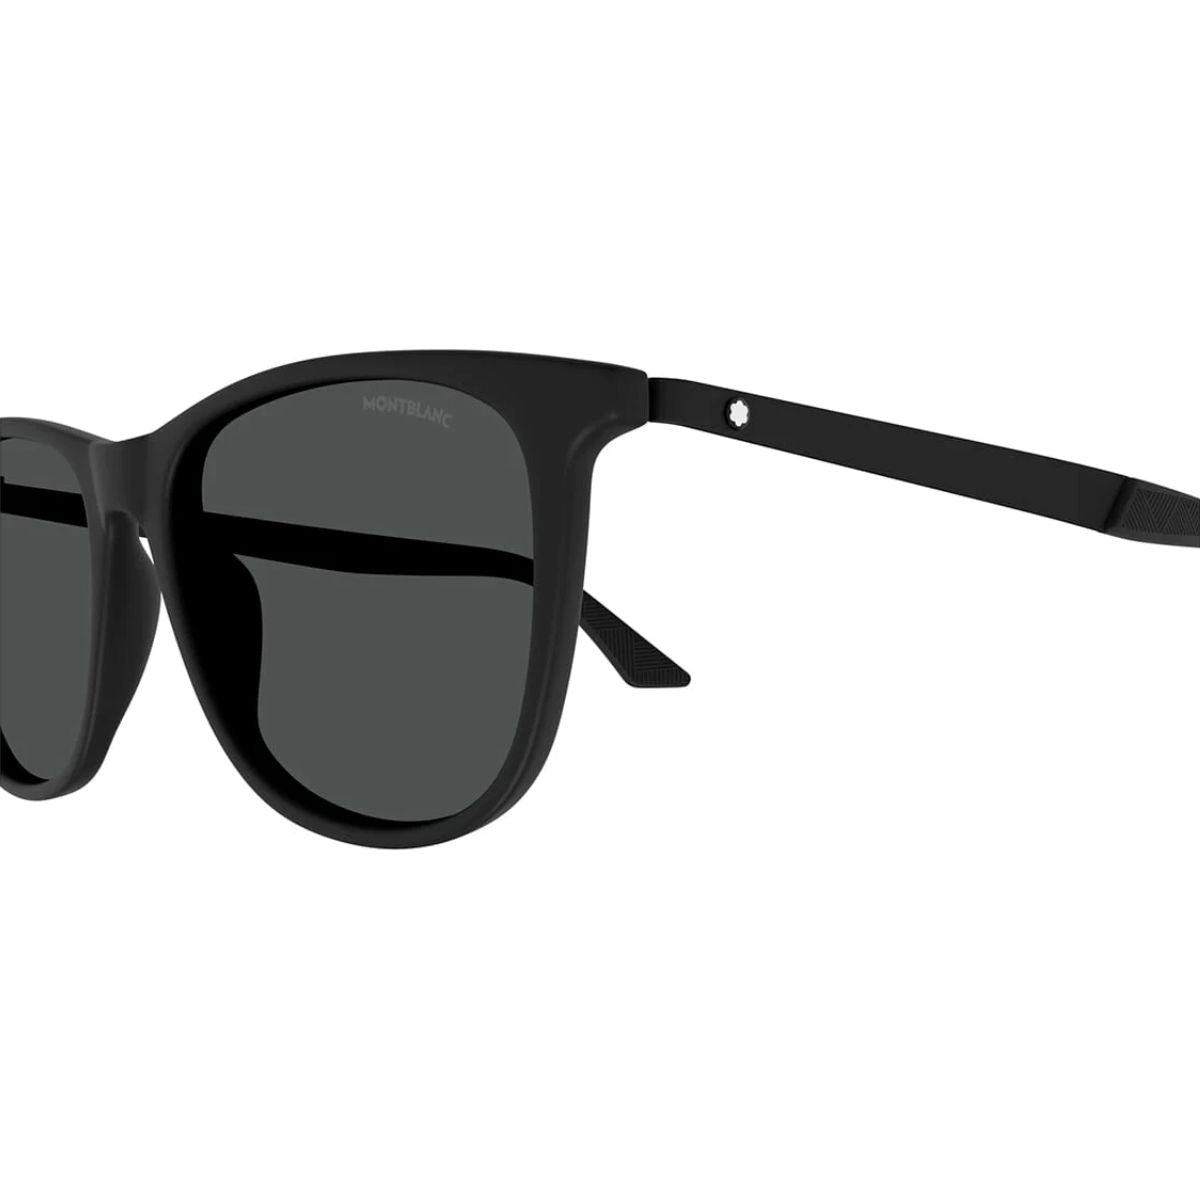 "Shop Trending Montblanc Square Sunglasses For Mens At Optorium"